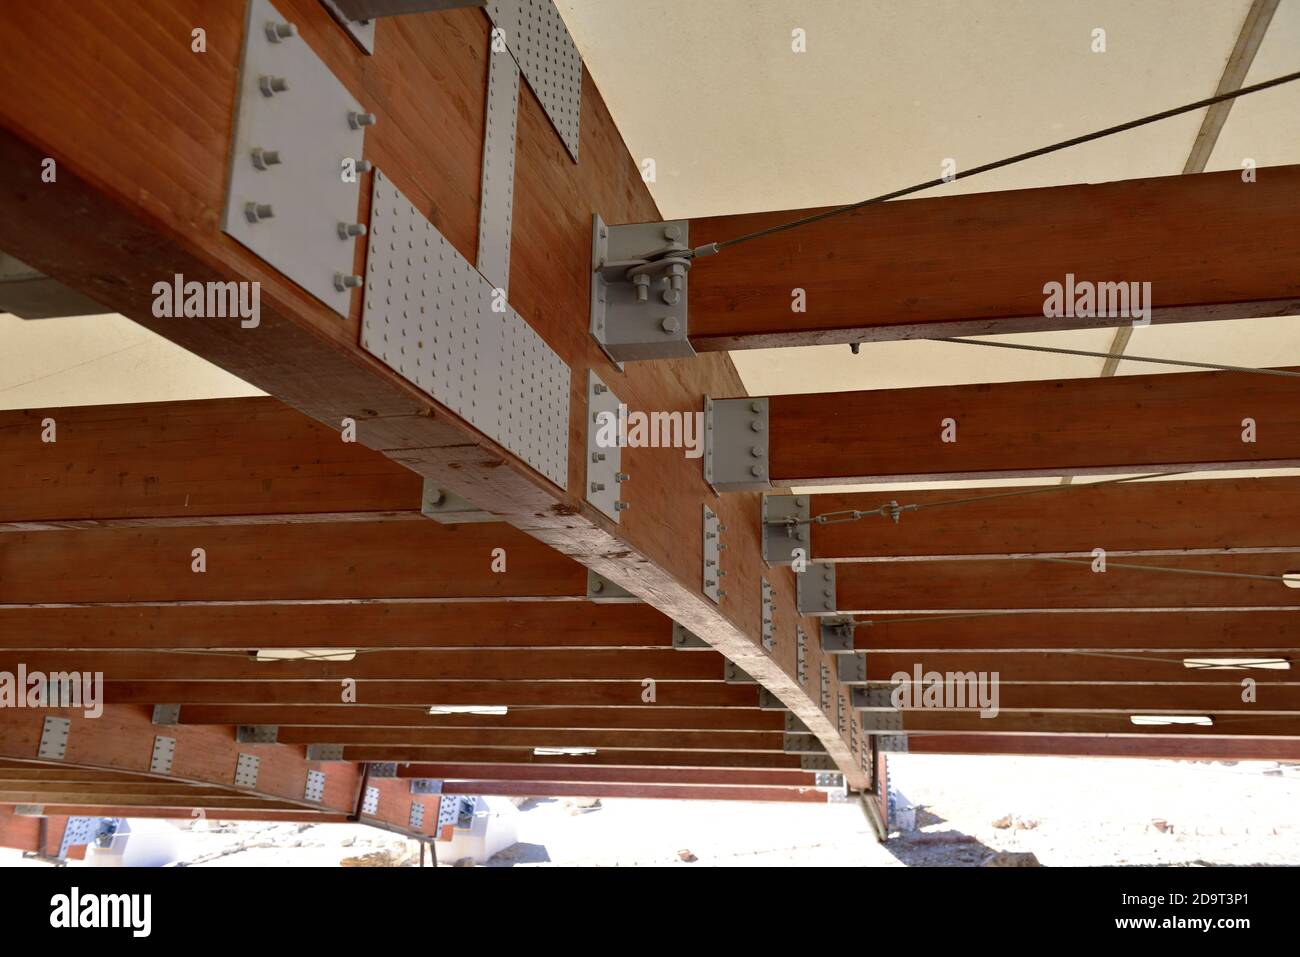 Travi in legno stratificato pesante con giunti in metallo imbullonato nel sito di copertura del tetto della "Casa di Eustolios", sito archeologico di Kourion, Cipro Foto Stock